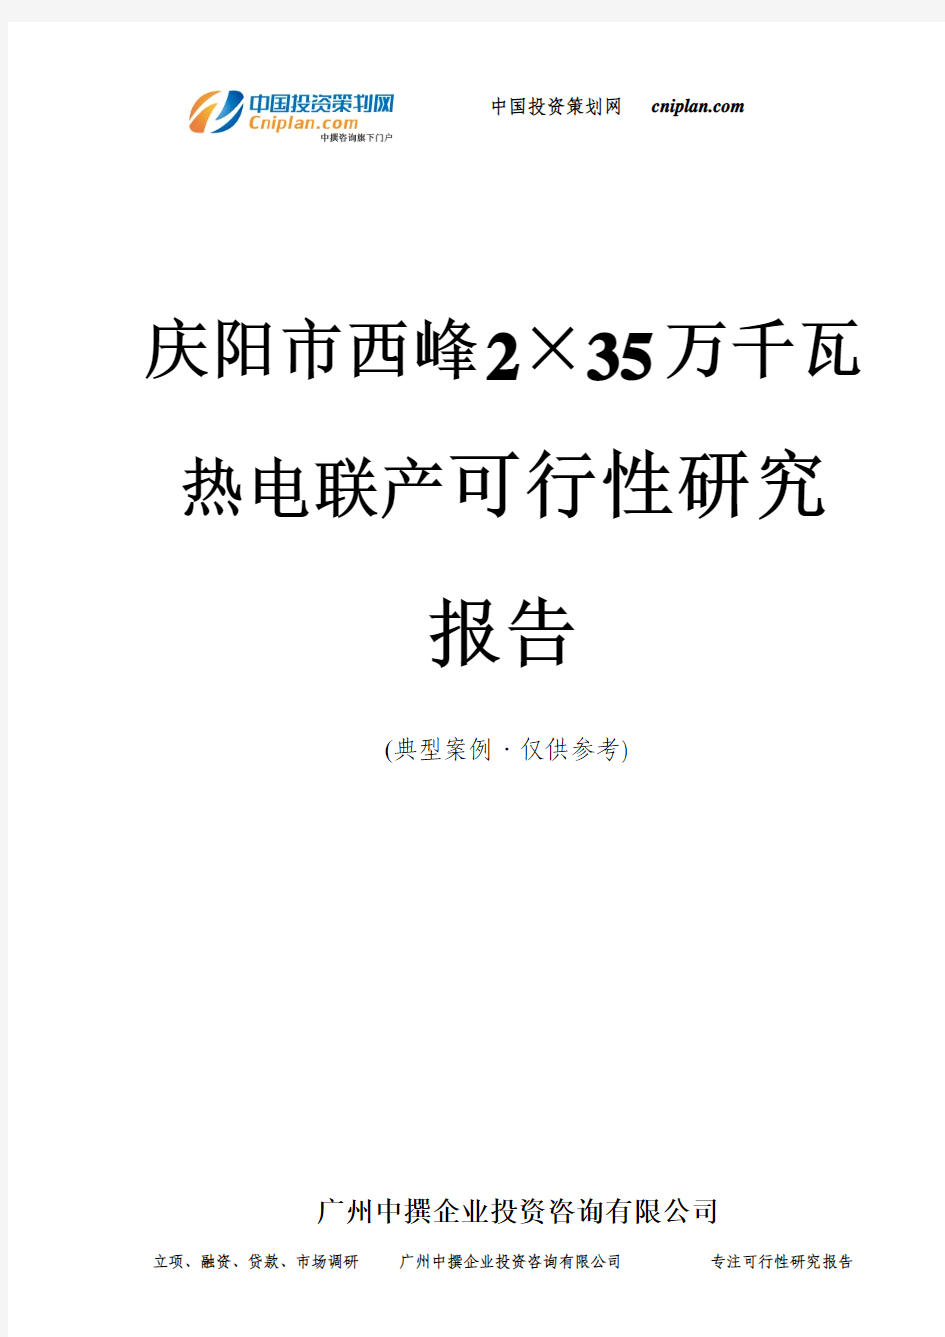 庆阳市西峰2×35万千瓦热电联产投资建设项目可行性研究报告-广州中撰咨询